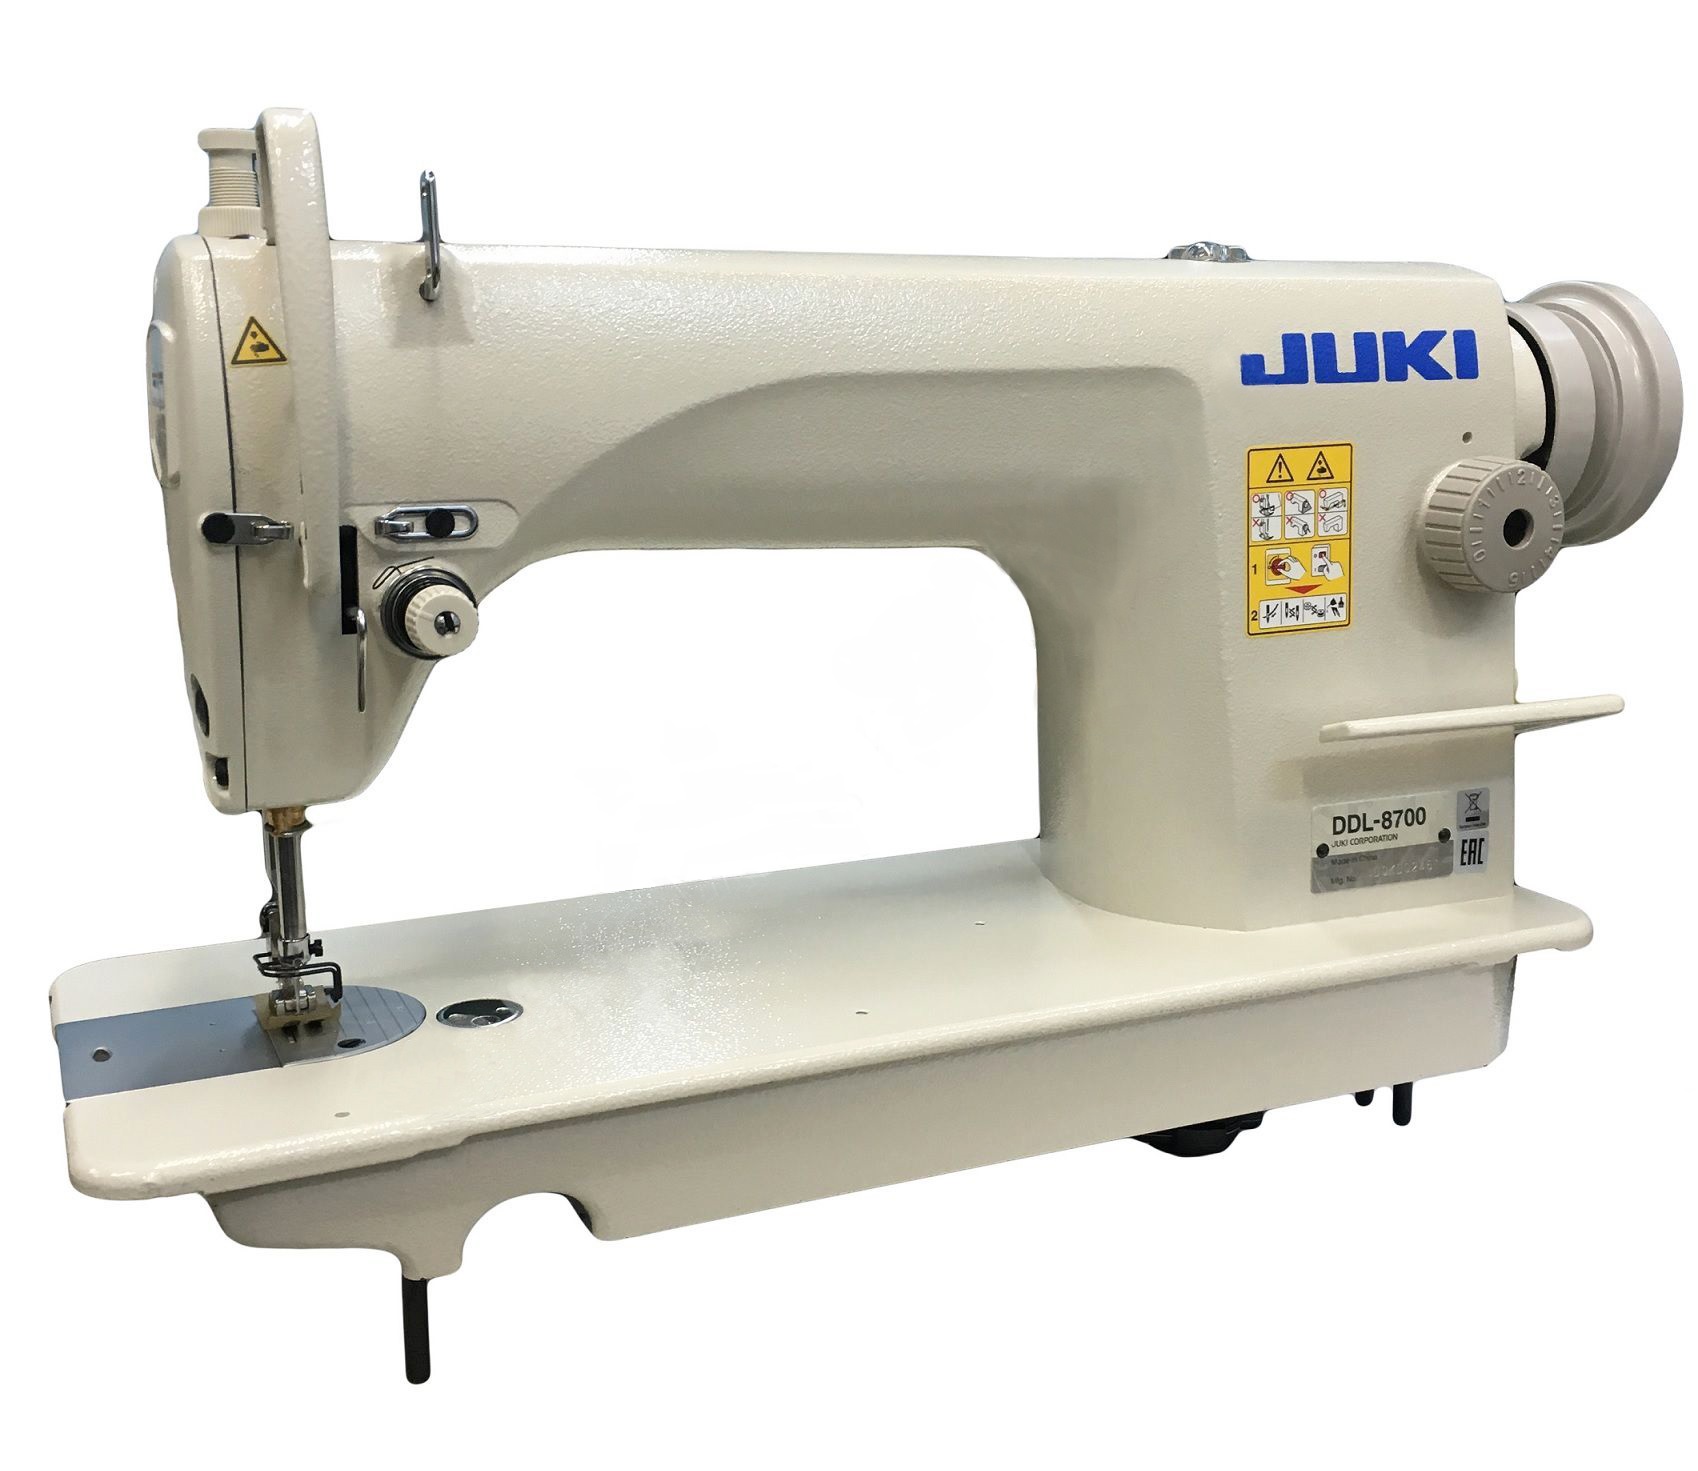 Купить швейную машинку juki. Juki DDL-8100eh. Juki DDL-8700. Промышленная швейная машина Juki DDL-8700h. Швейная машинка Juki DDL 8700.